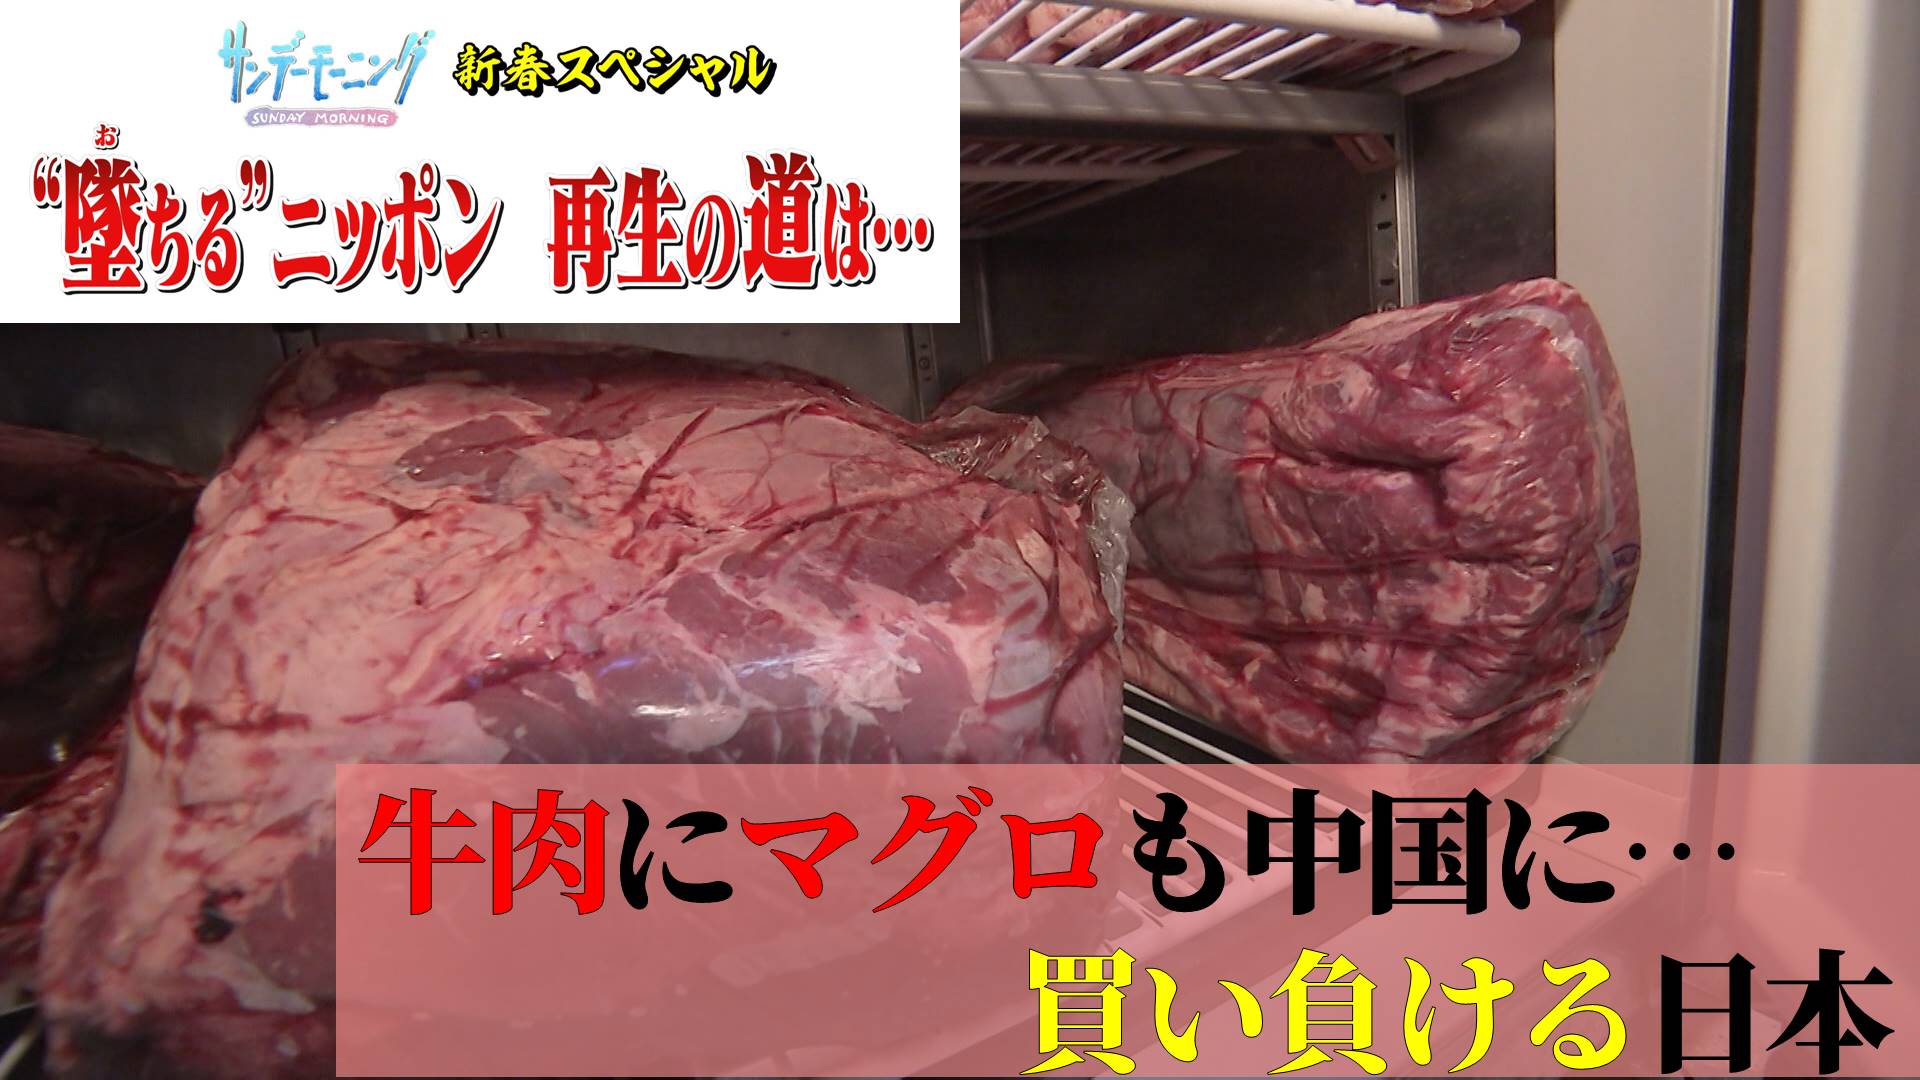 マグロ、牛肉…世界で起きる食料の調達競争に買い負けるニッポン